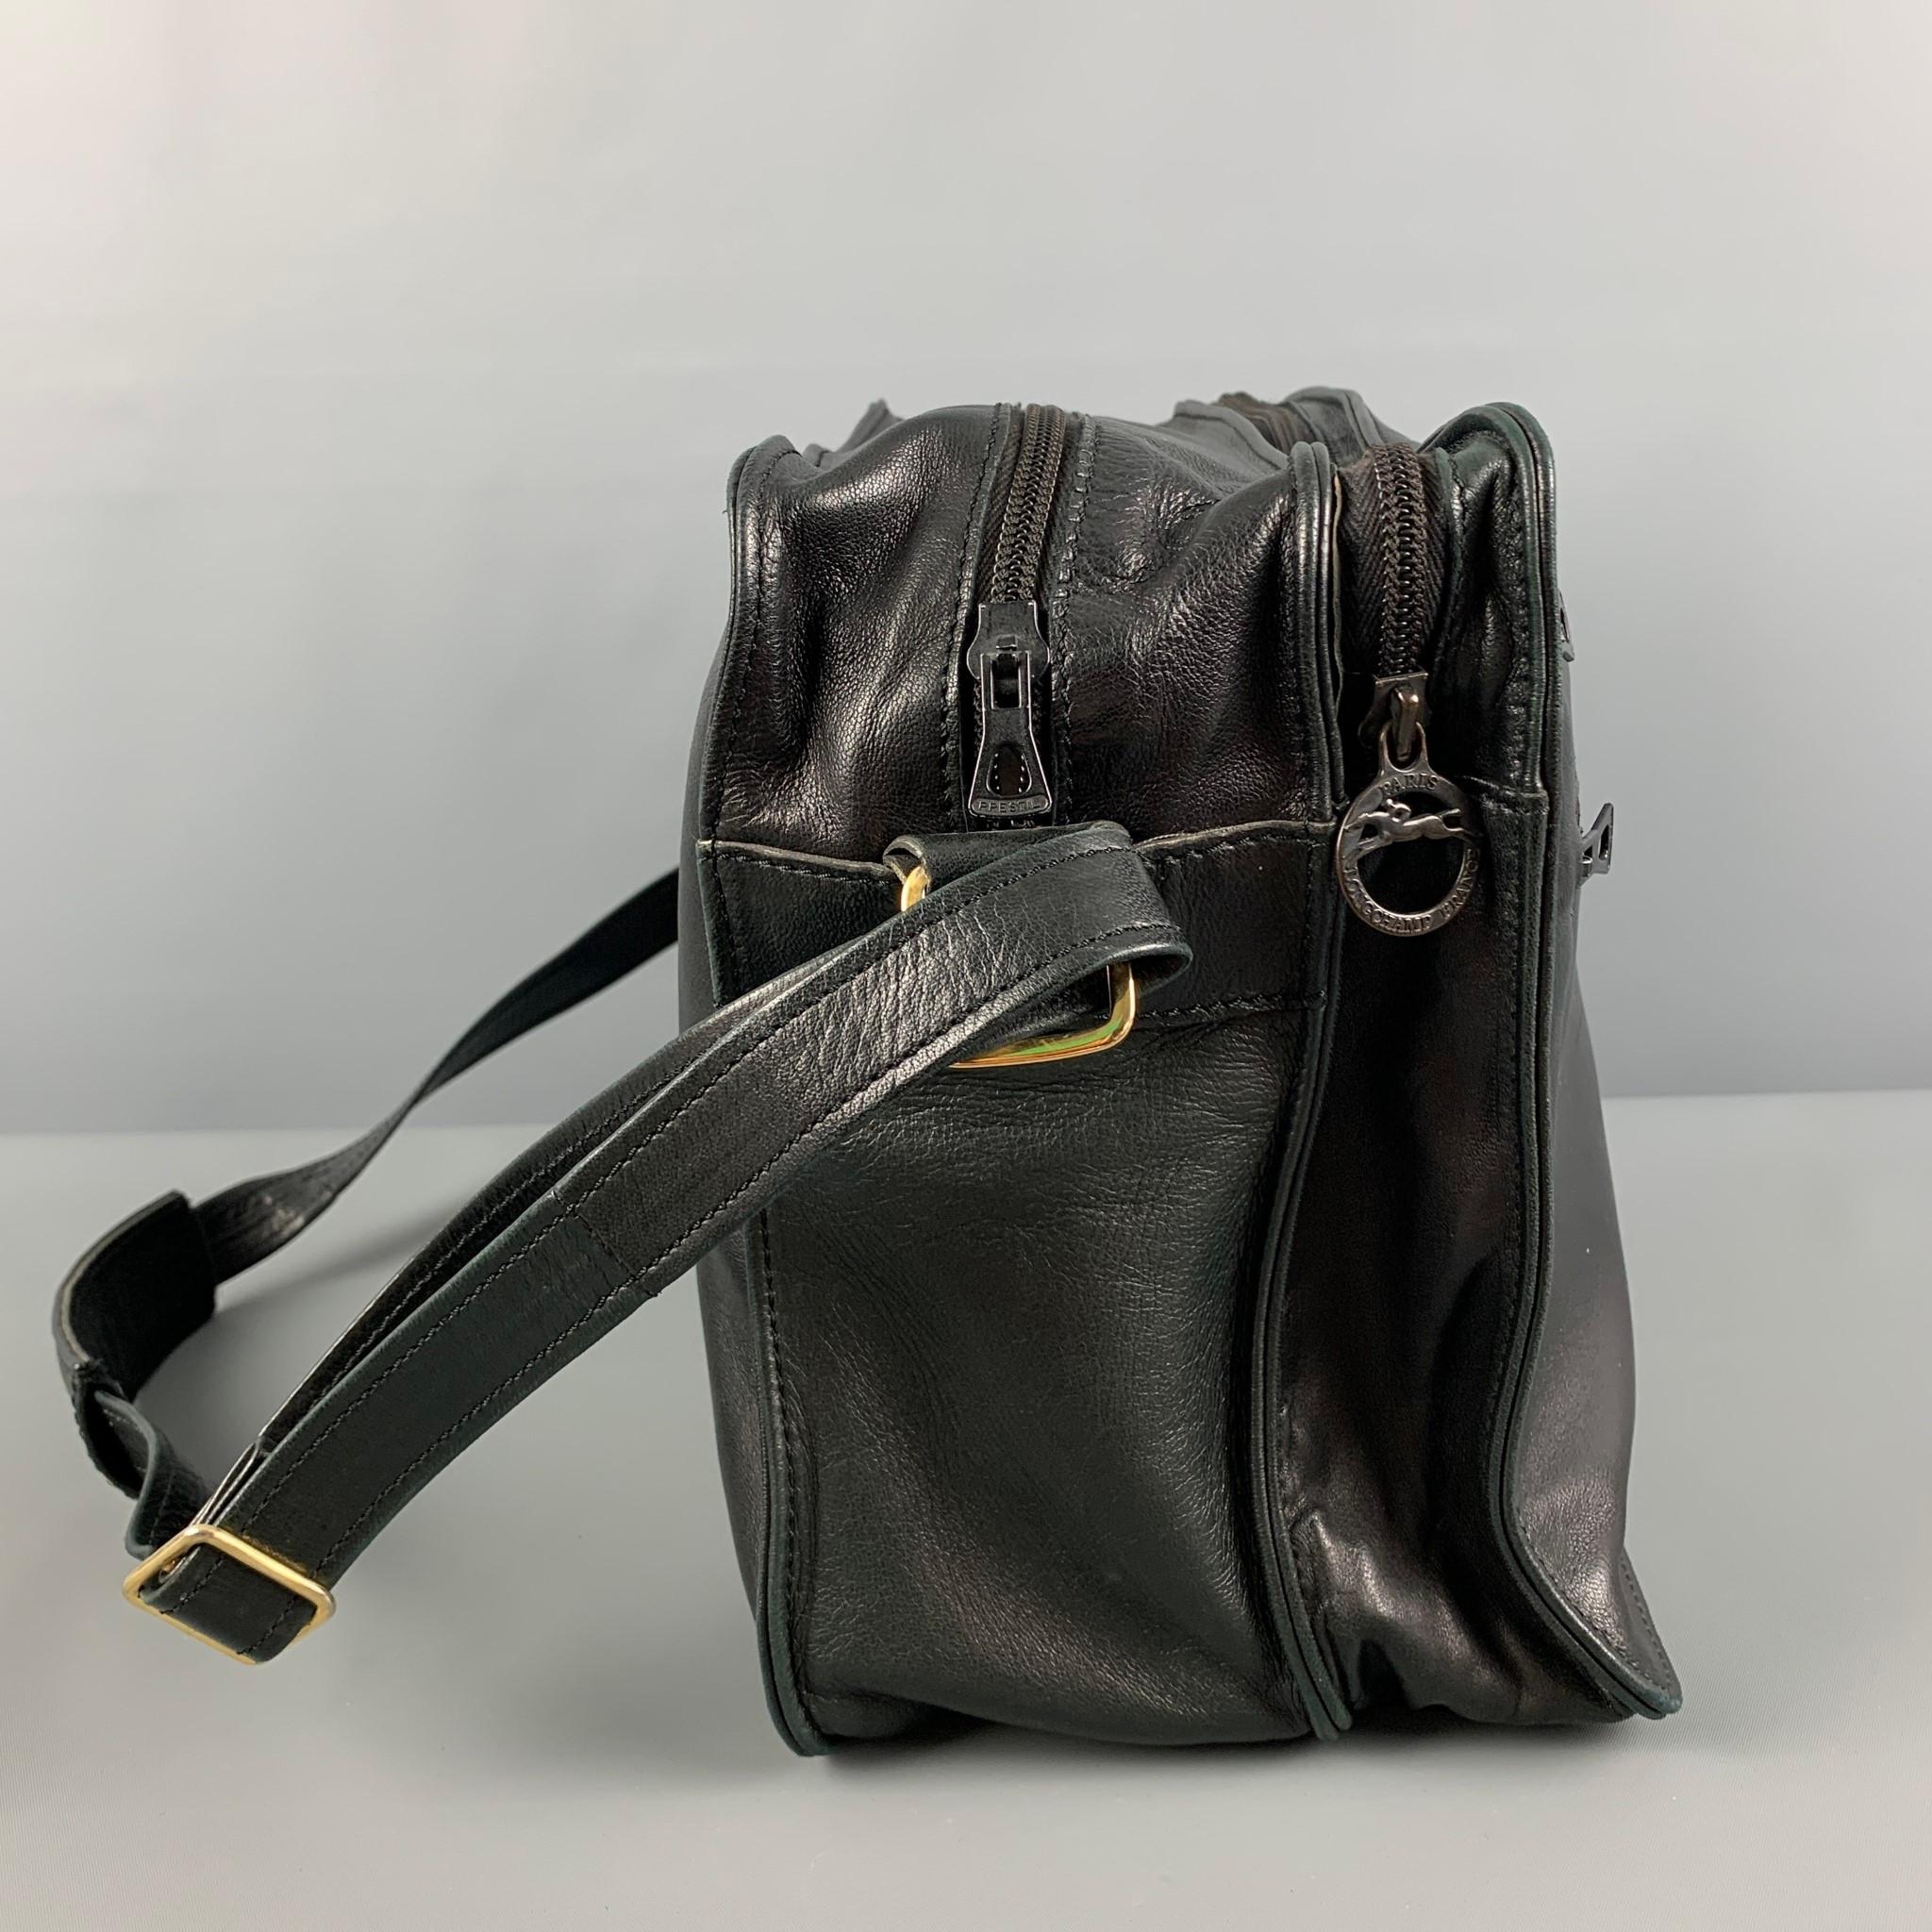 Le sac Longchamps est présenté dans un cuir noir avec des accessoires dorés, une bandoulière réglable, des poches avant et une fermeture à glissière. 

Bon état d'origine. Légère usure. En l'état.

Mesures :

Longueur : 13,5 in.
Largeur : 6.5